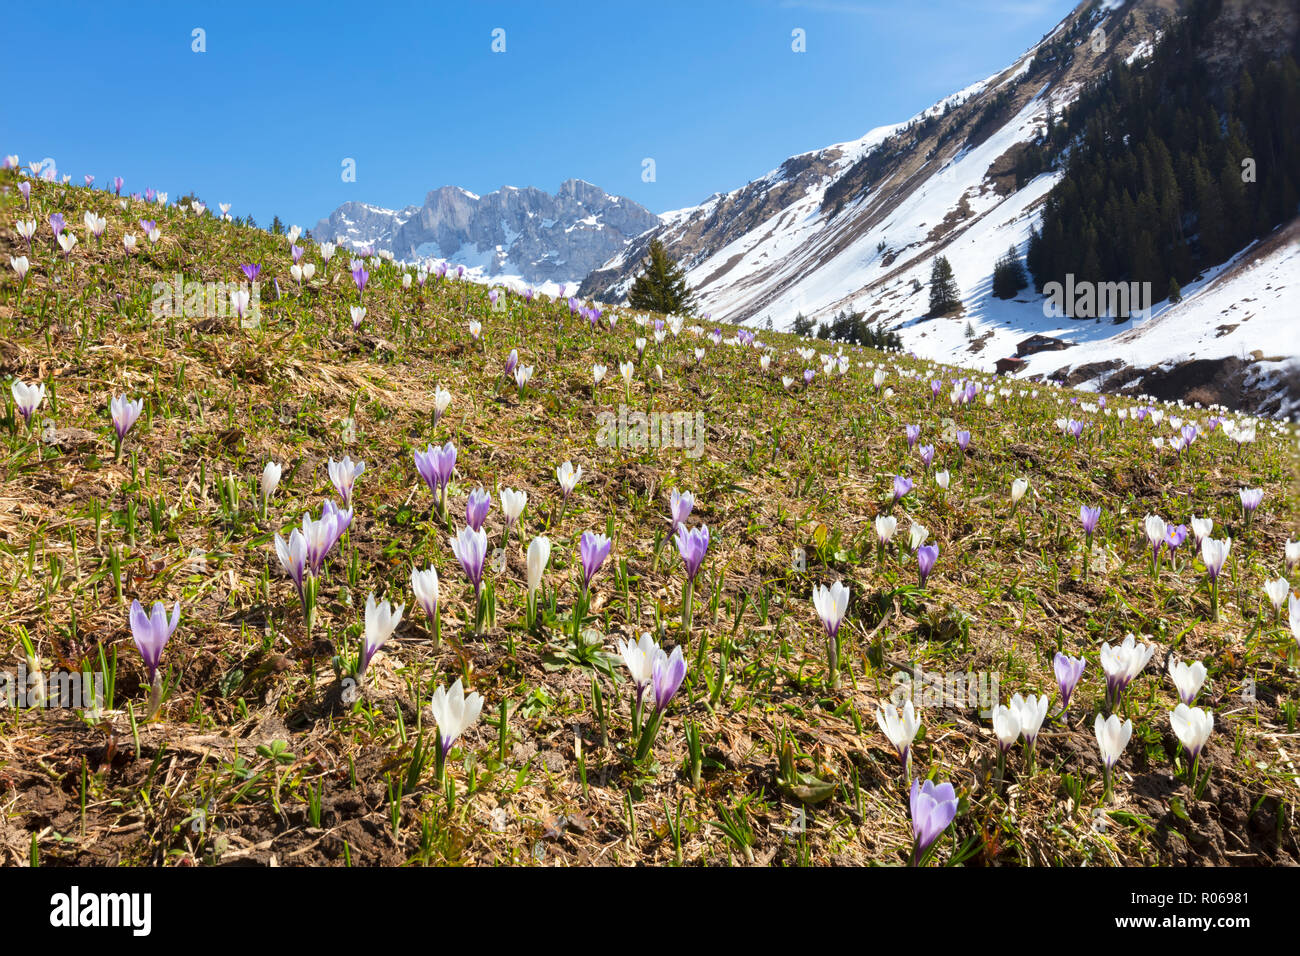 Crocus Blumen in voller Blüte, Partnun, Prattigau, Davos, Kanton Graubünden, Schweiz, Europa Stockfoto